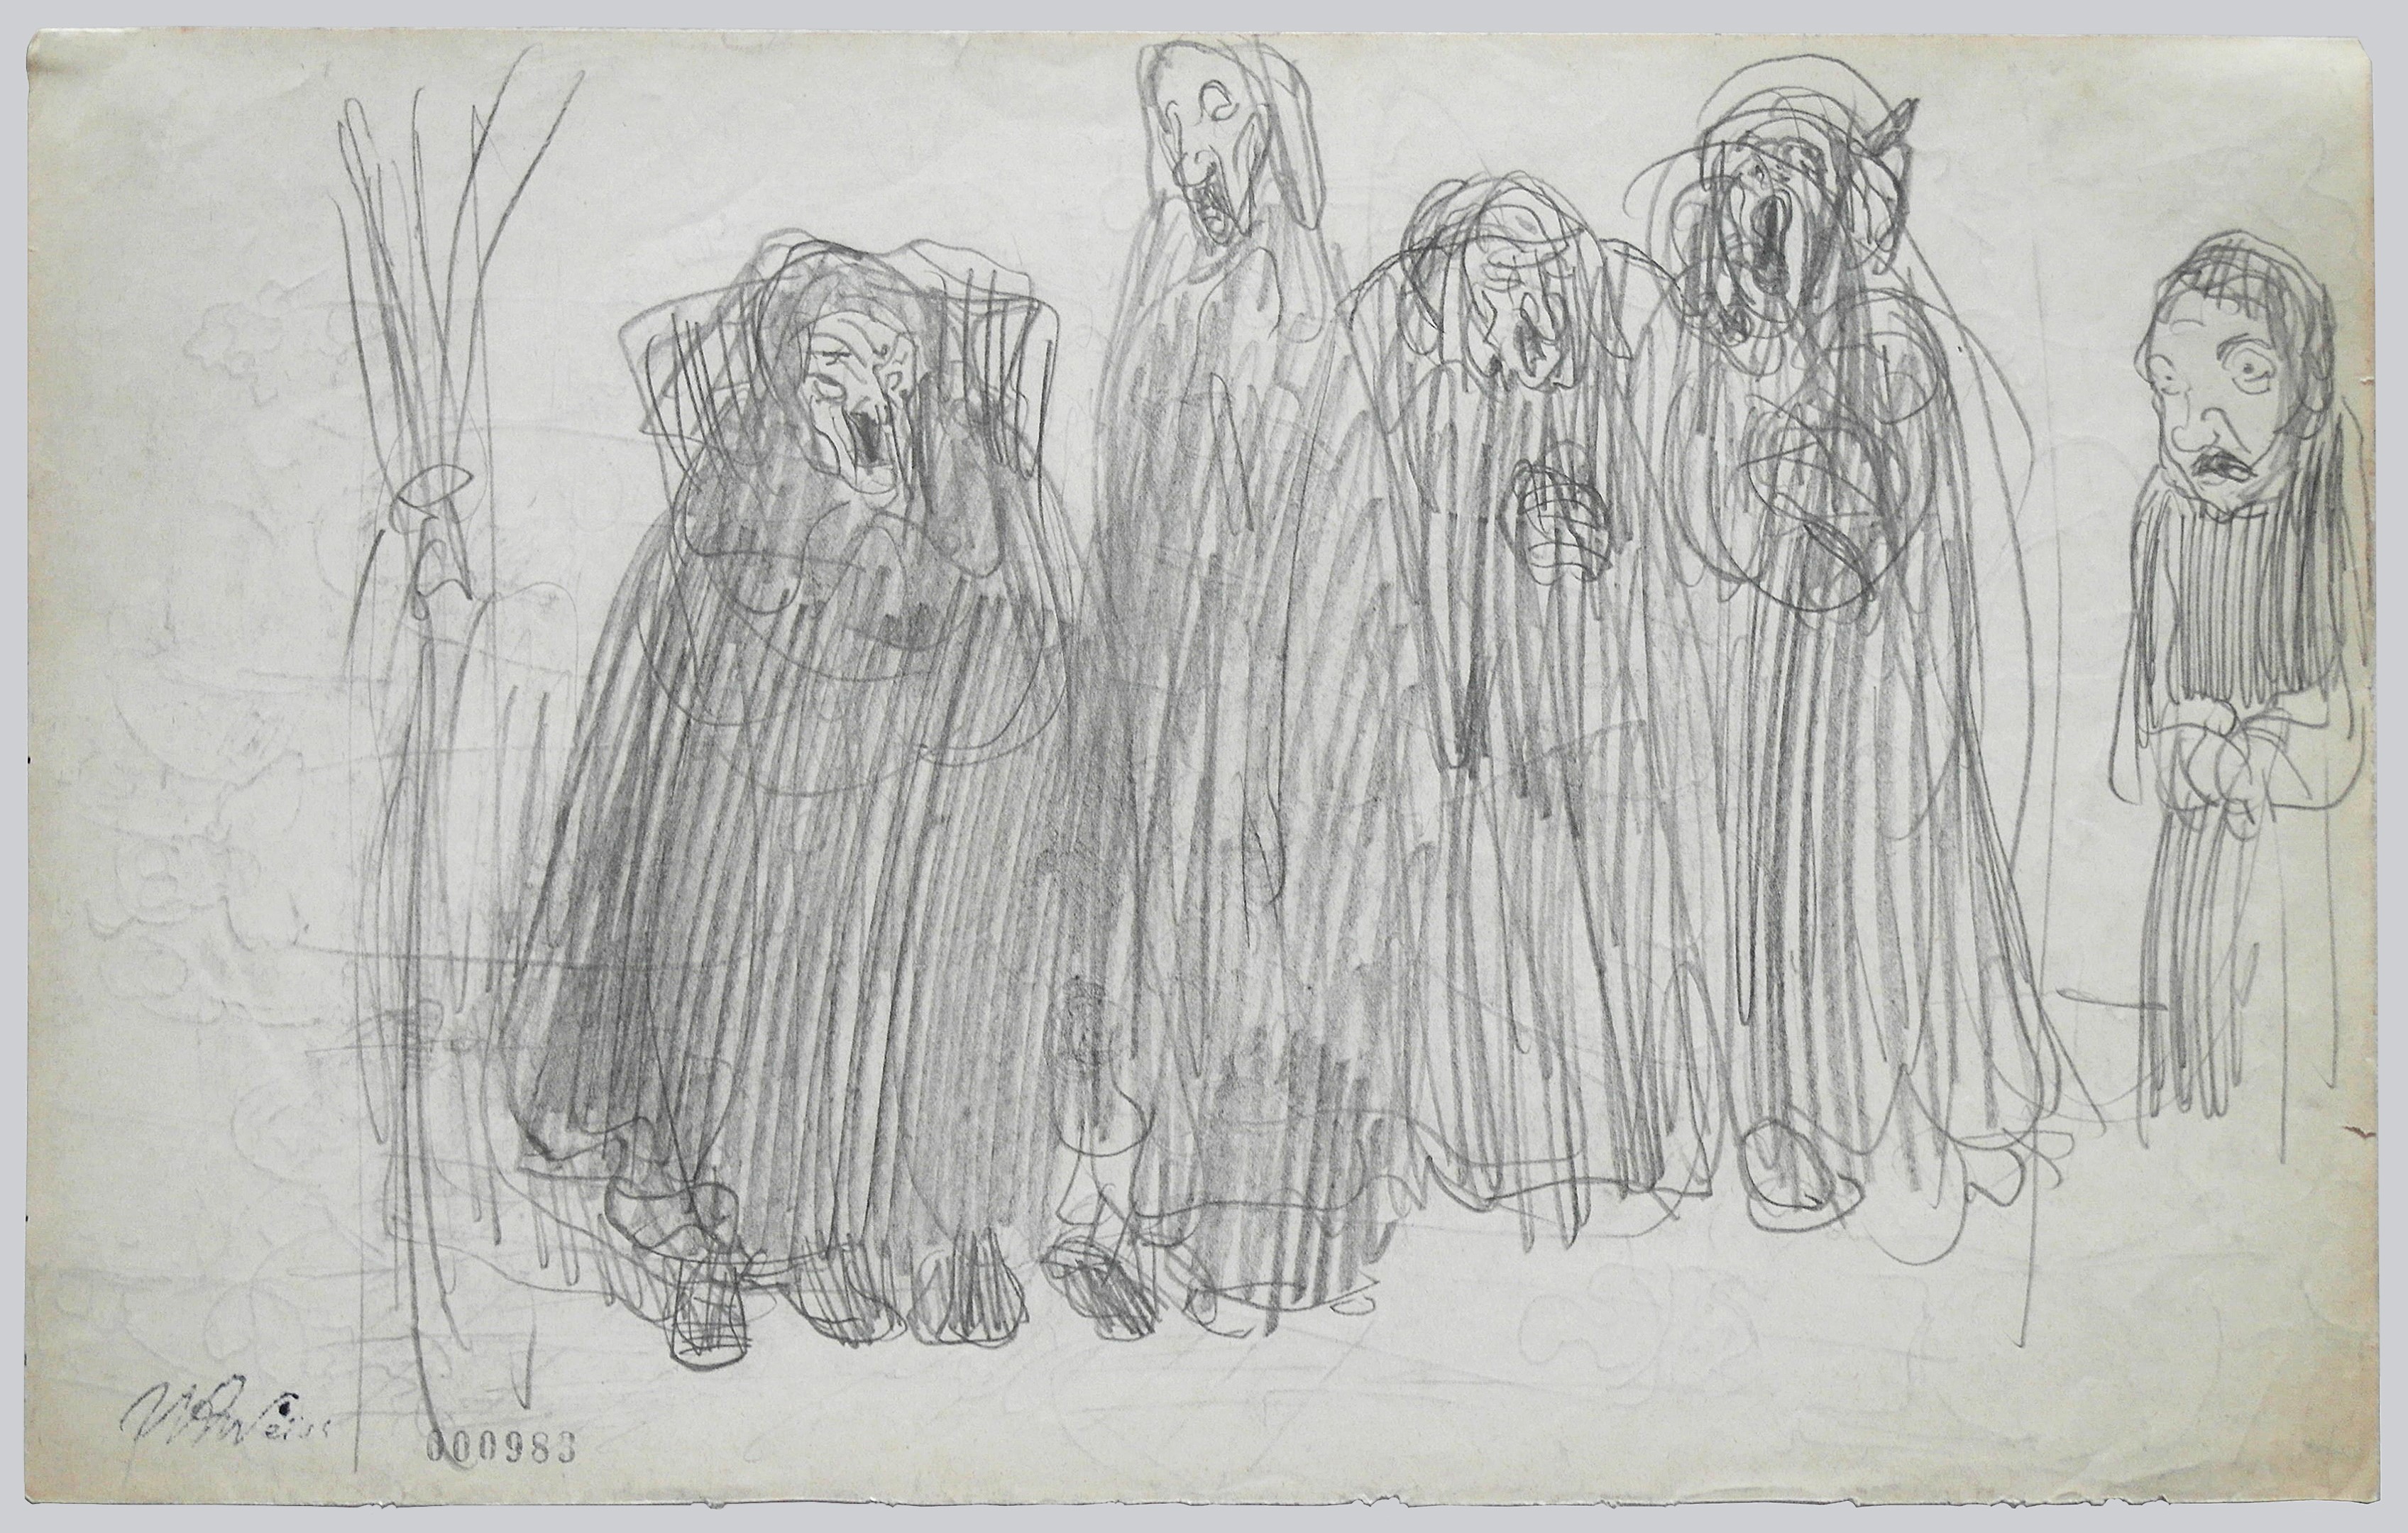 Rysunek Wojciecha Weissa "Żydzi". Postaci narysowane czarną kreską, zamazane, trudno rozpoznać ich płeć.